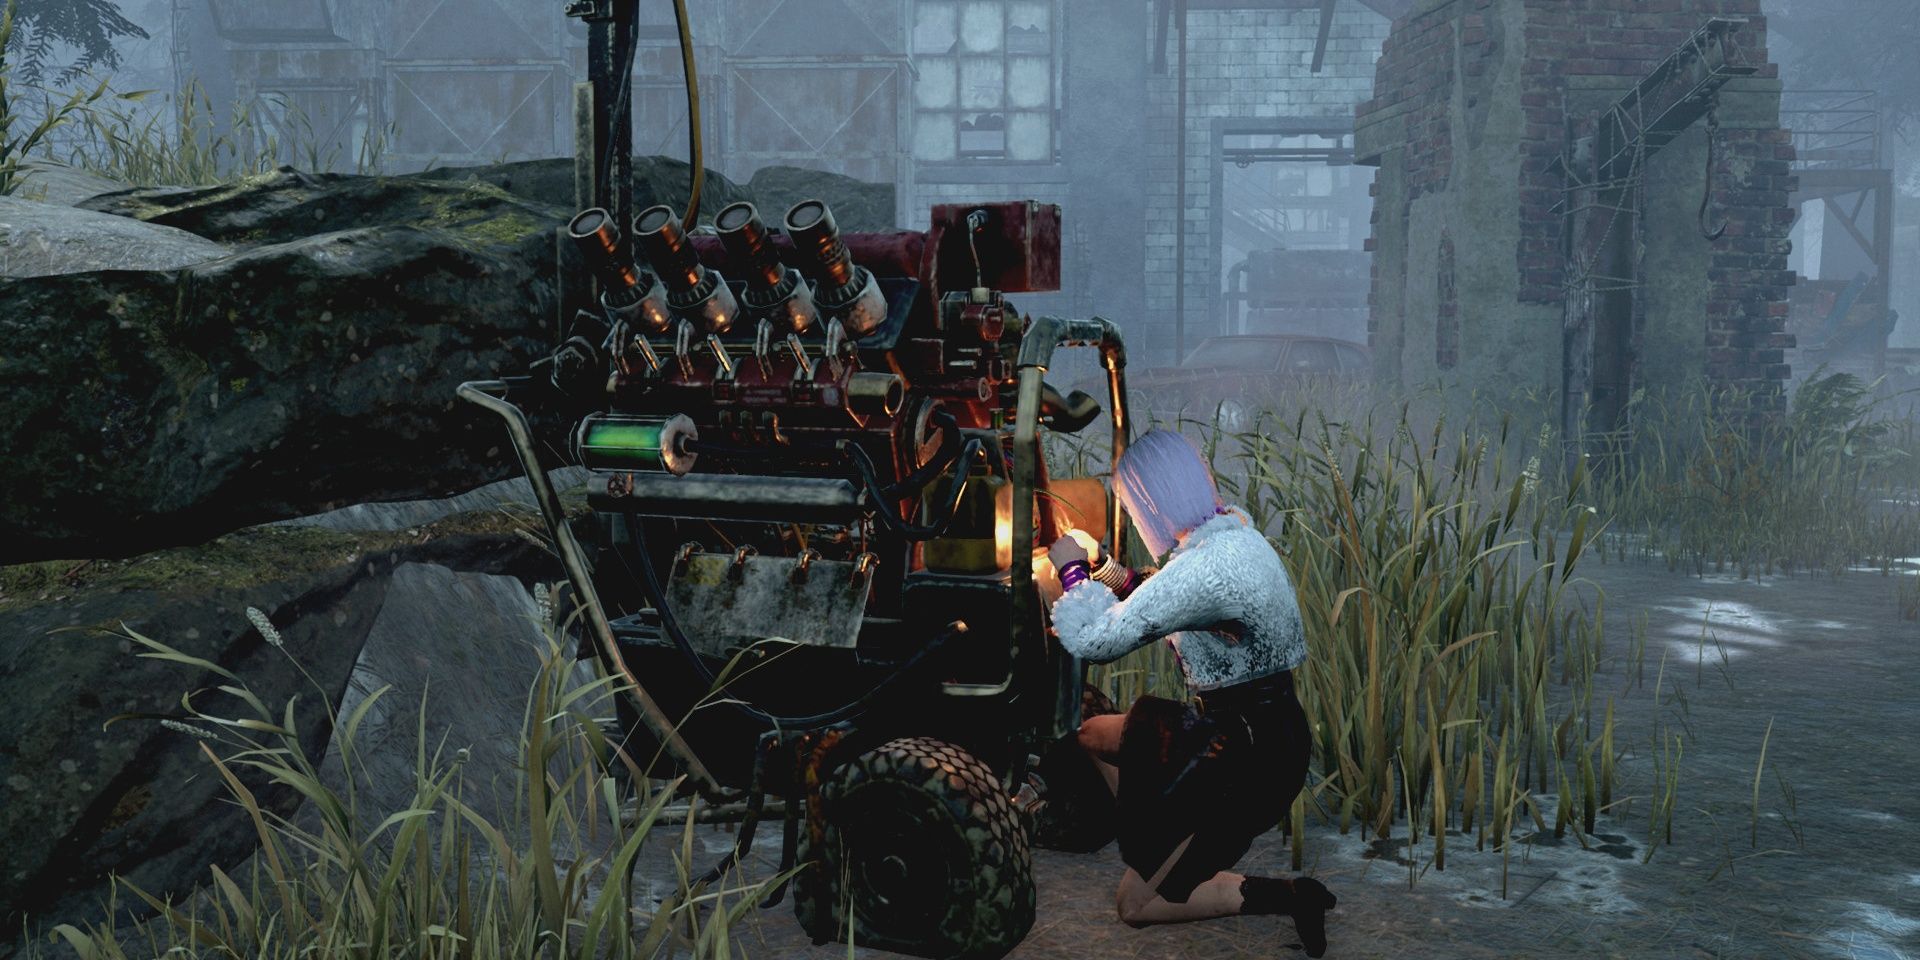 blast mine survivor working on generator